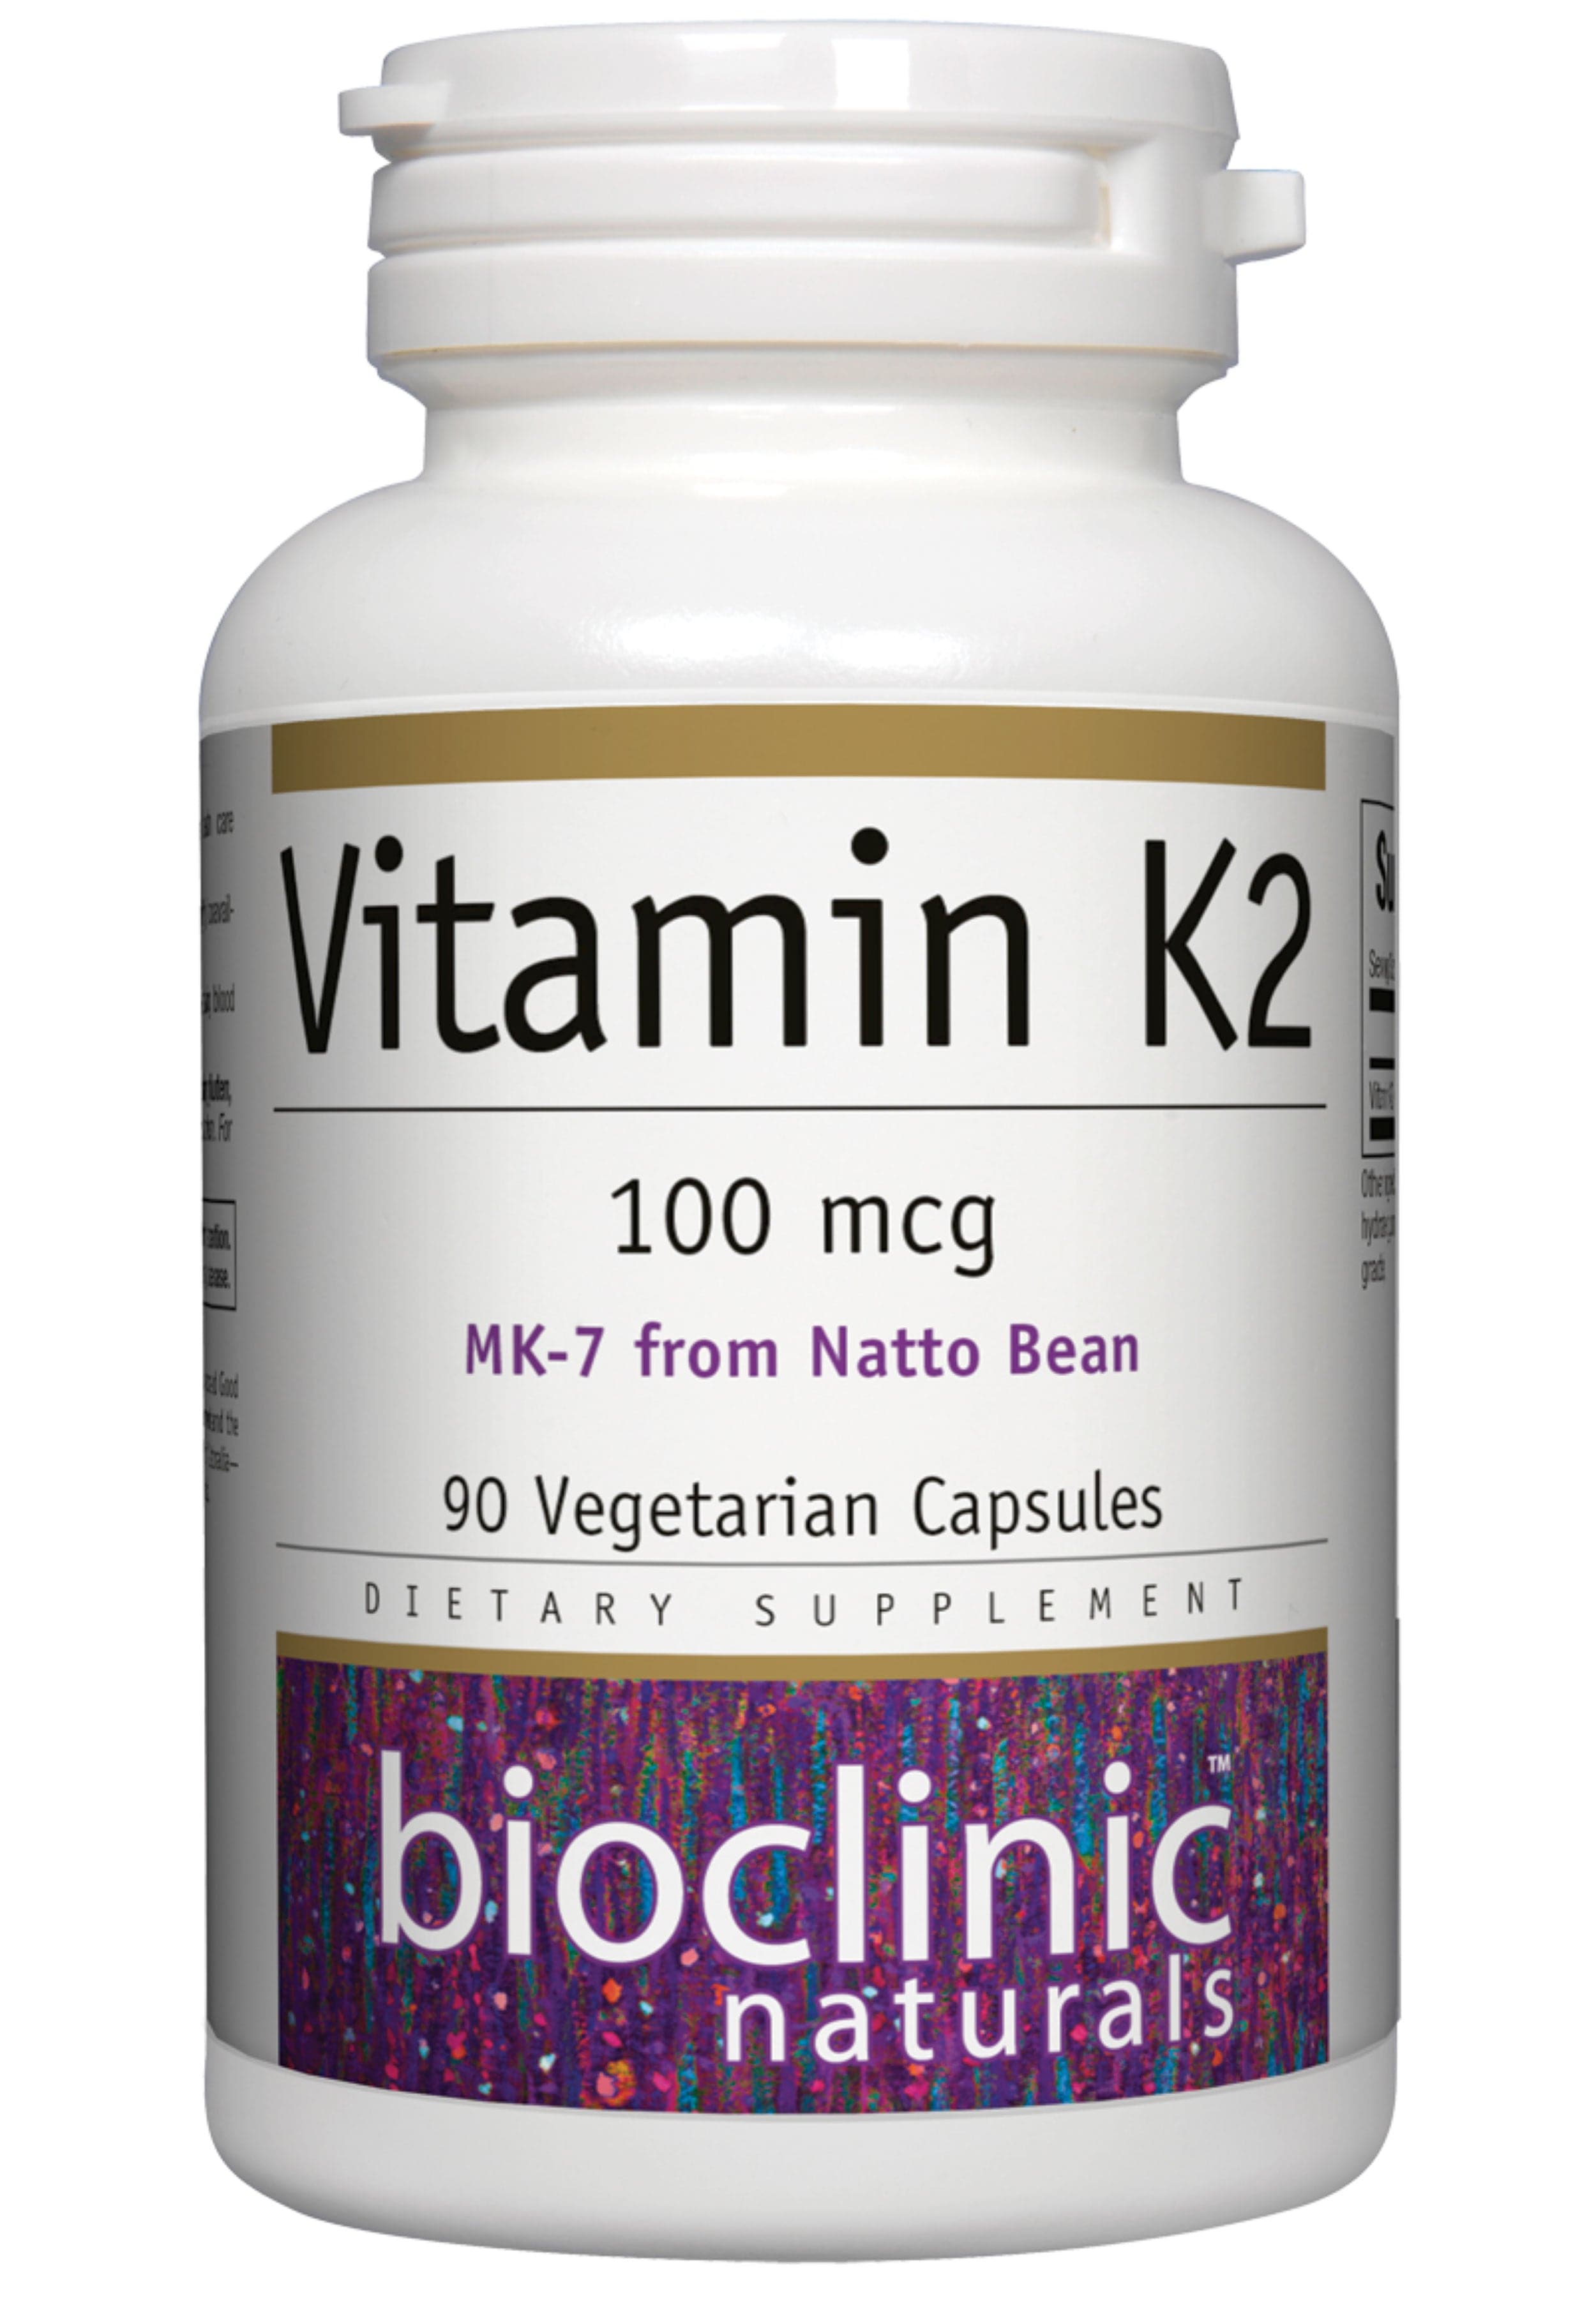 Bioclinic Naturals Vitamin K2 100mcg